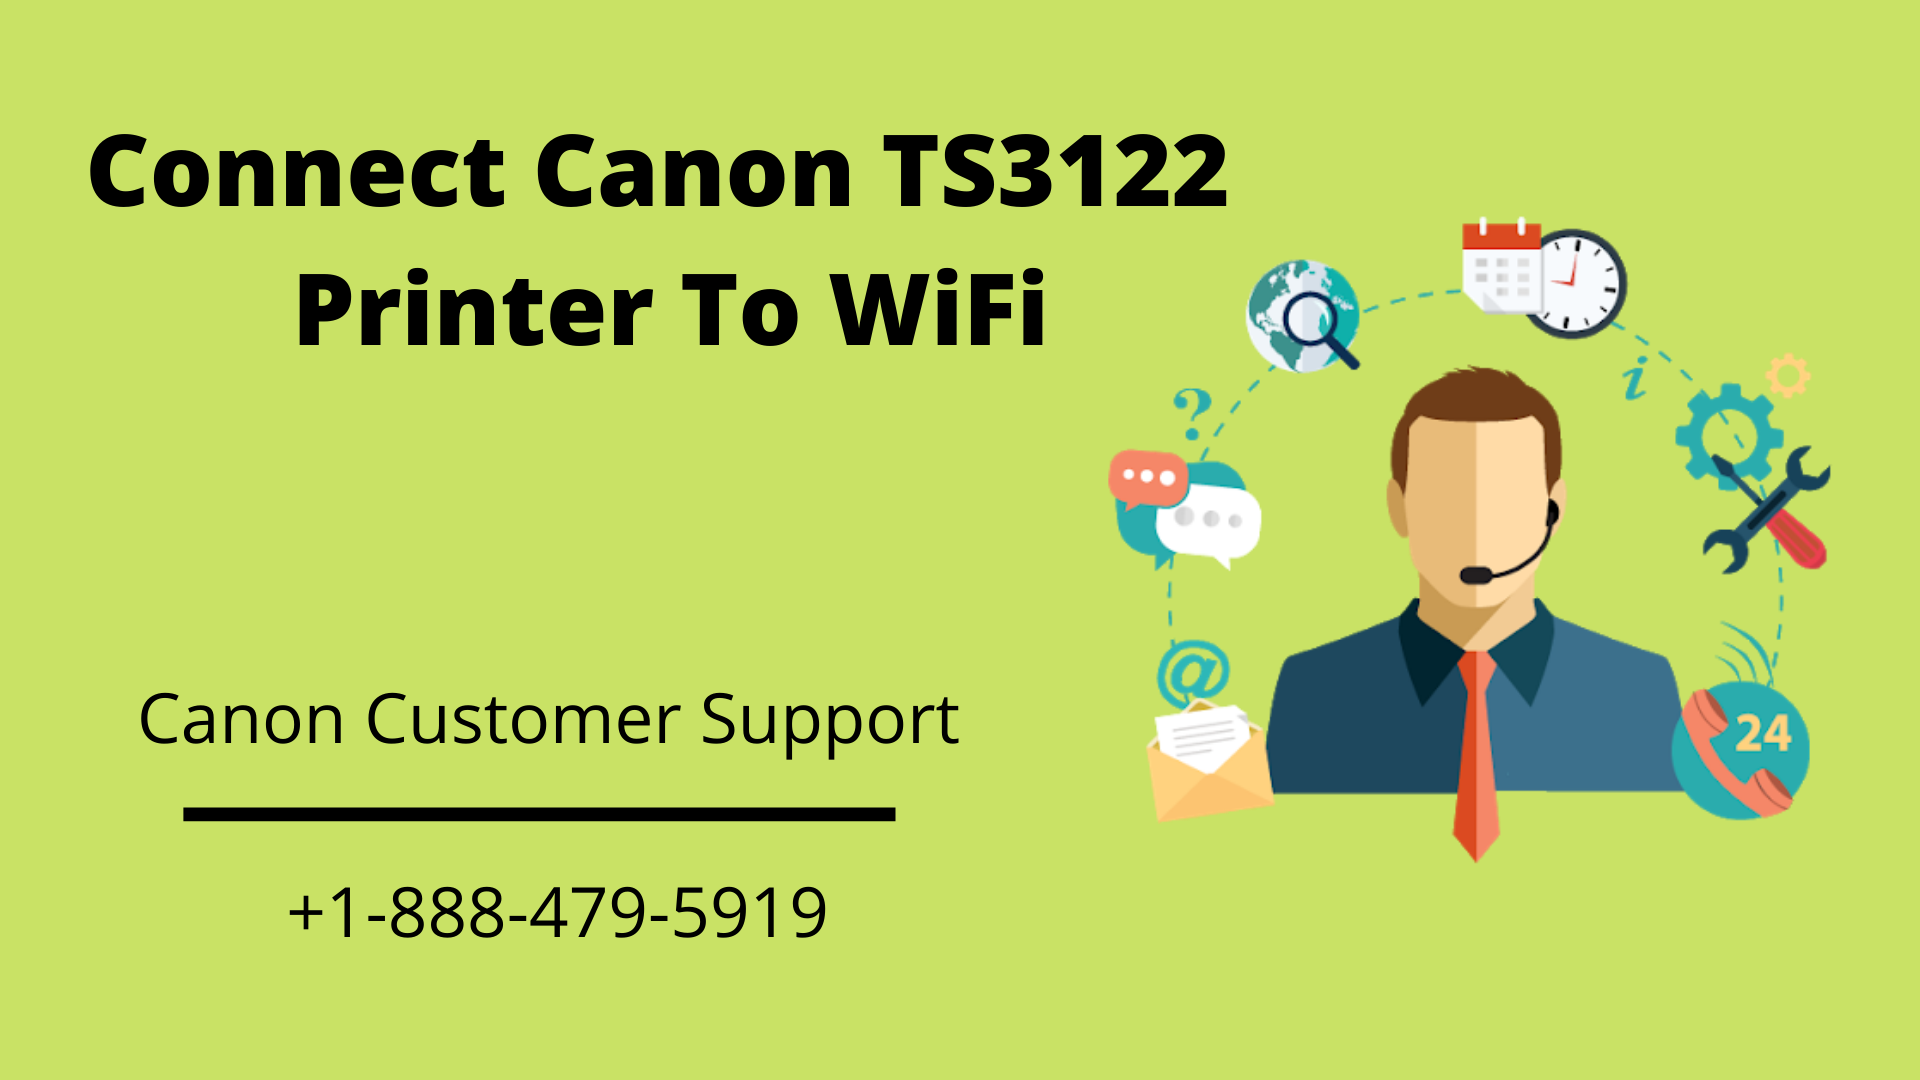 Connect Canon TS3122 Printer To WiFi ExcelTechGuru